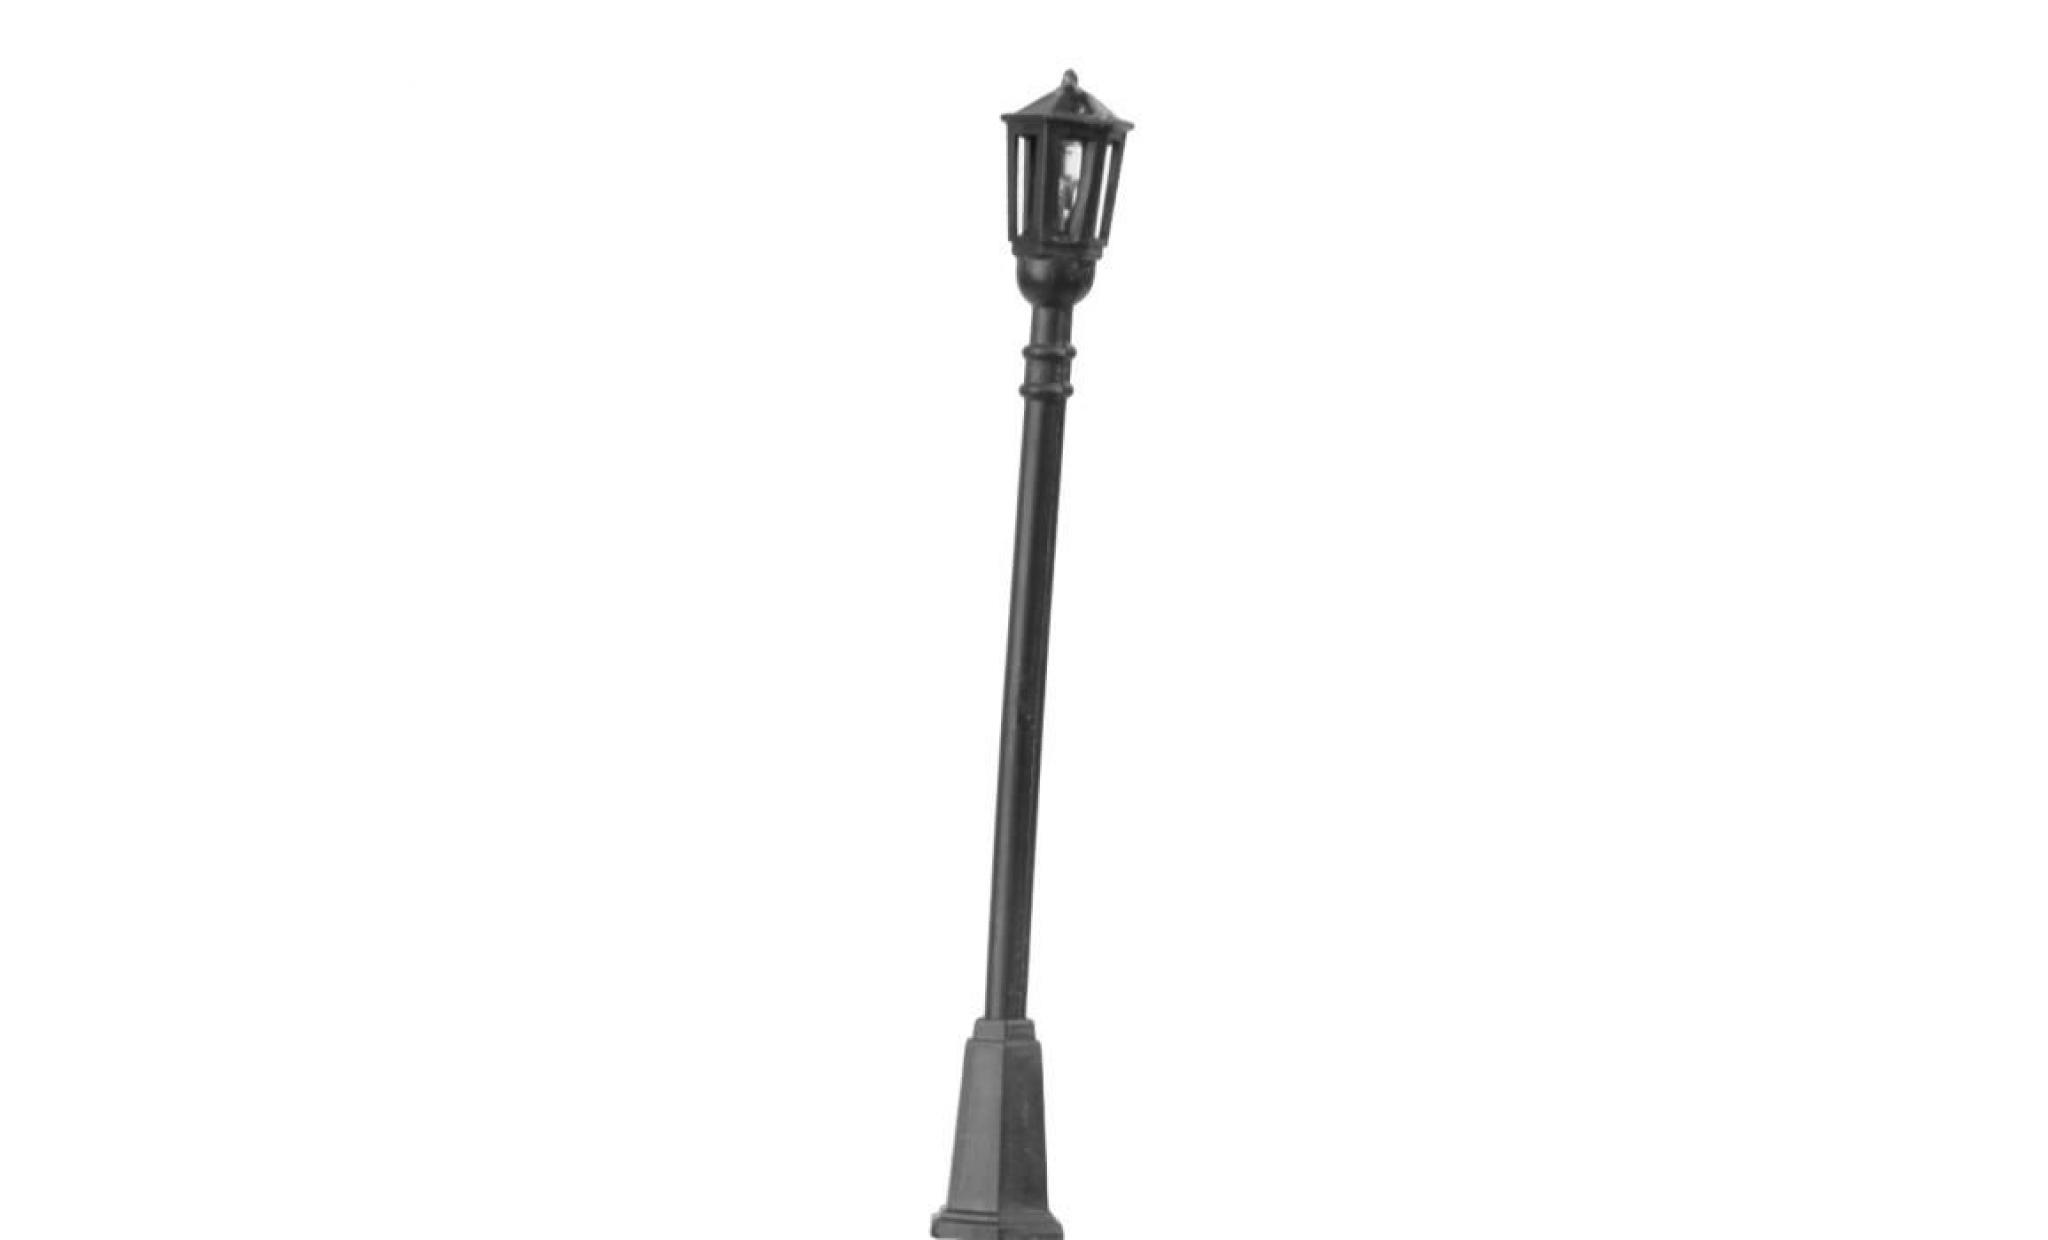 kit  modèle jardin lampe led lampadaire w   échelle de la tête seule 1 100 20pcs pas cher